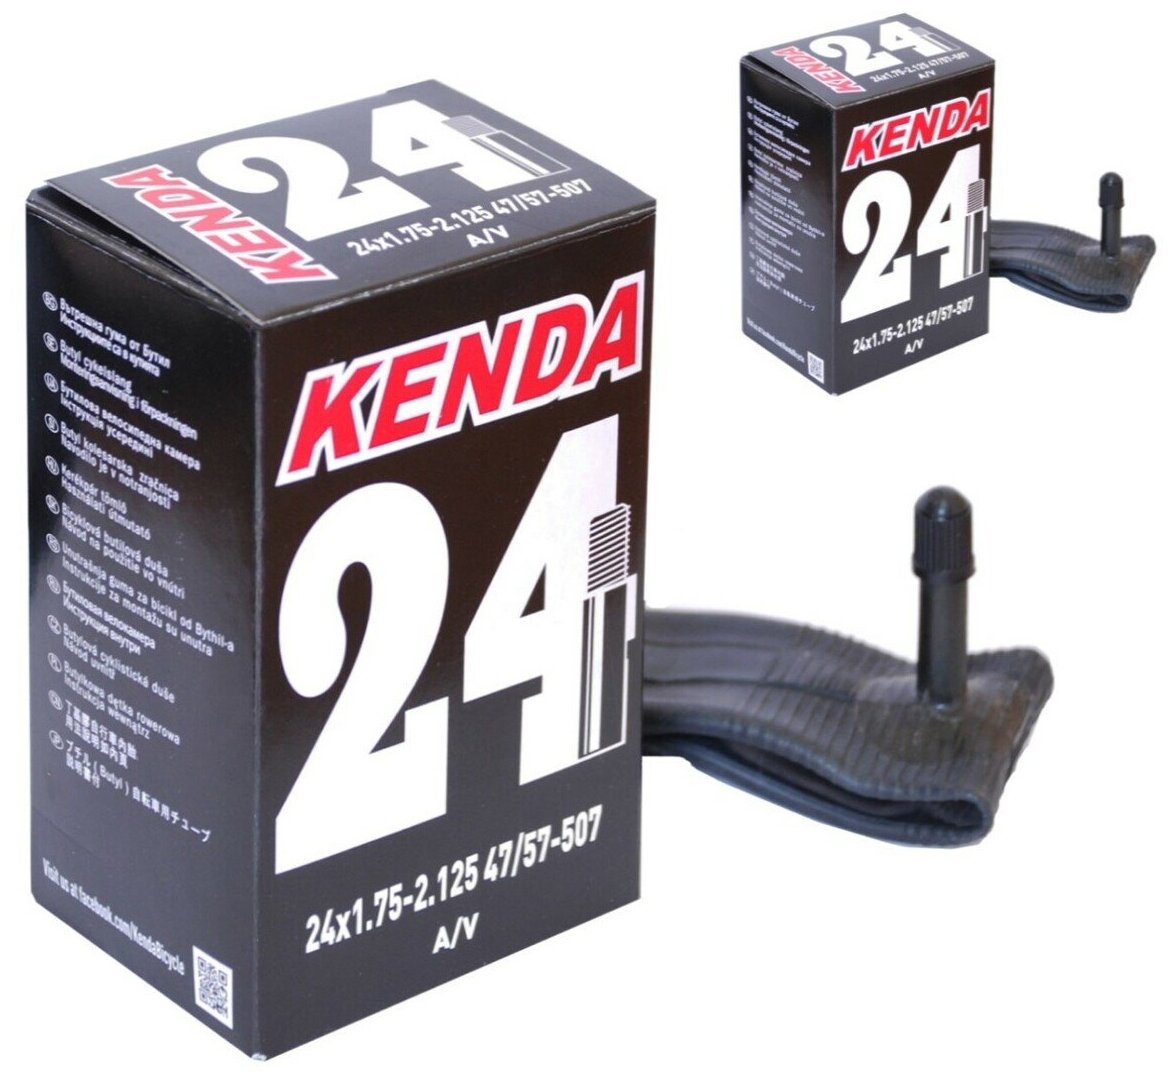 Велосипедная камера 24" авто 1,75х2,125 (47/57-507) KENDA